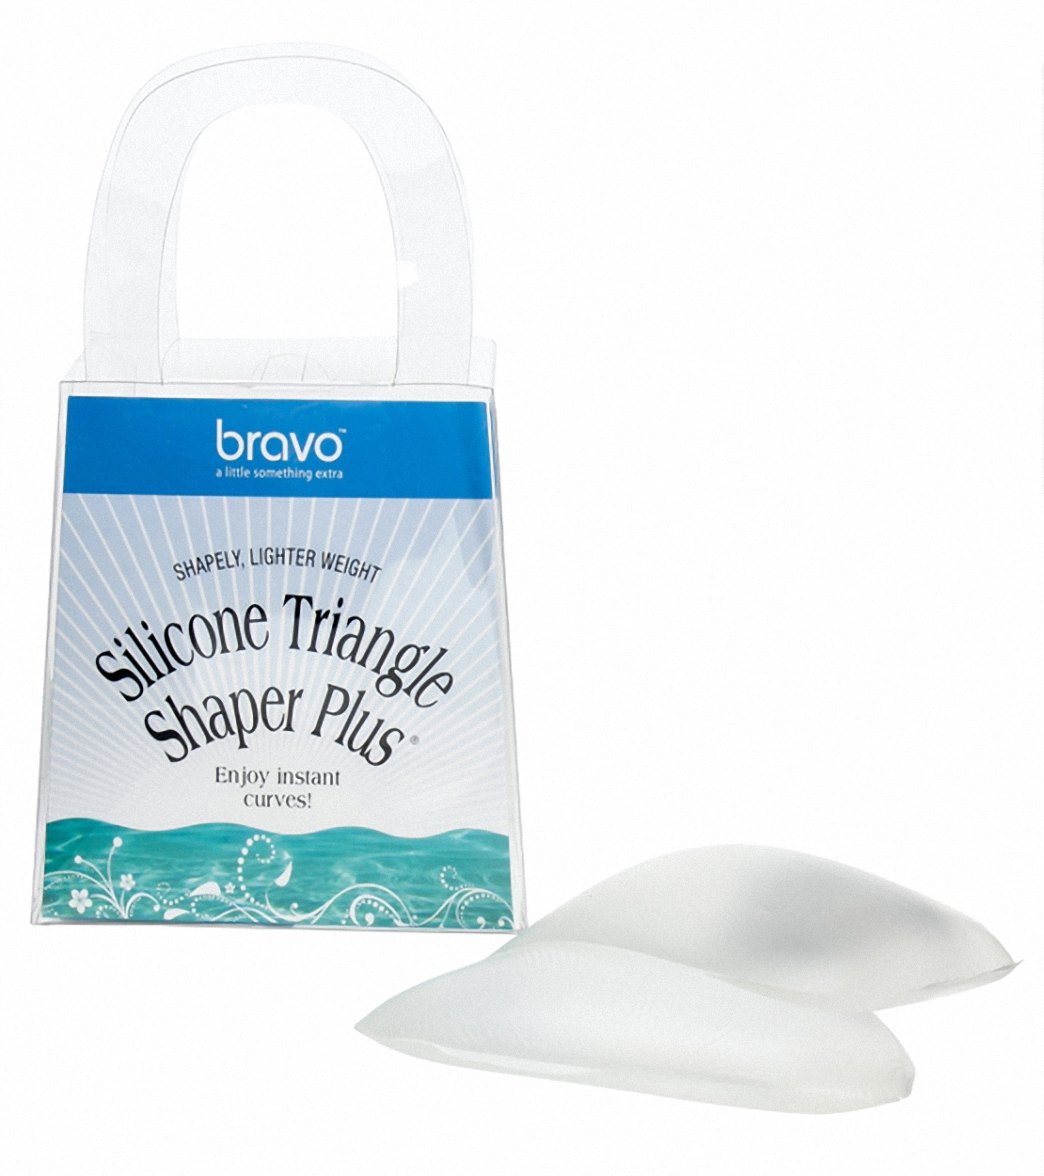 Bravo Clear Silicone Triangle Bikini Top Shaper Plus at